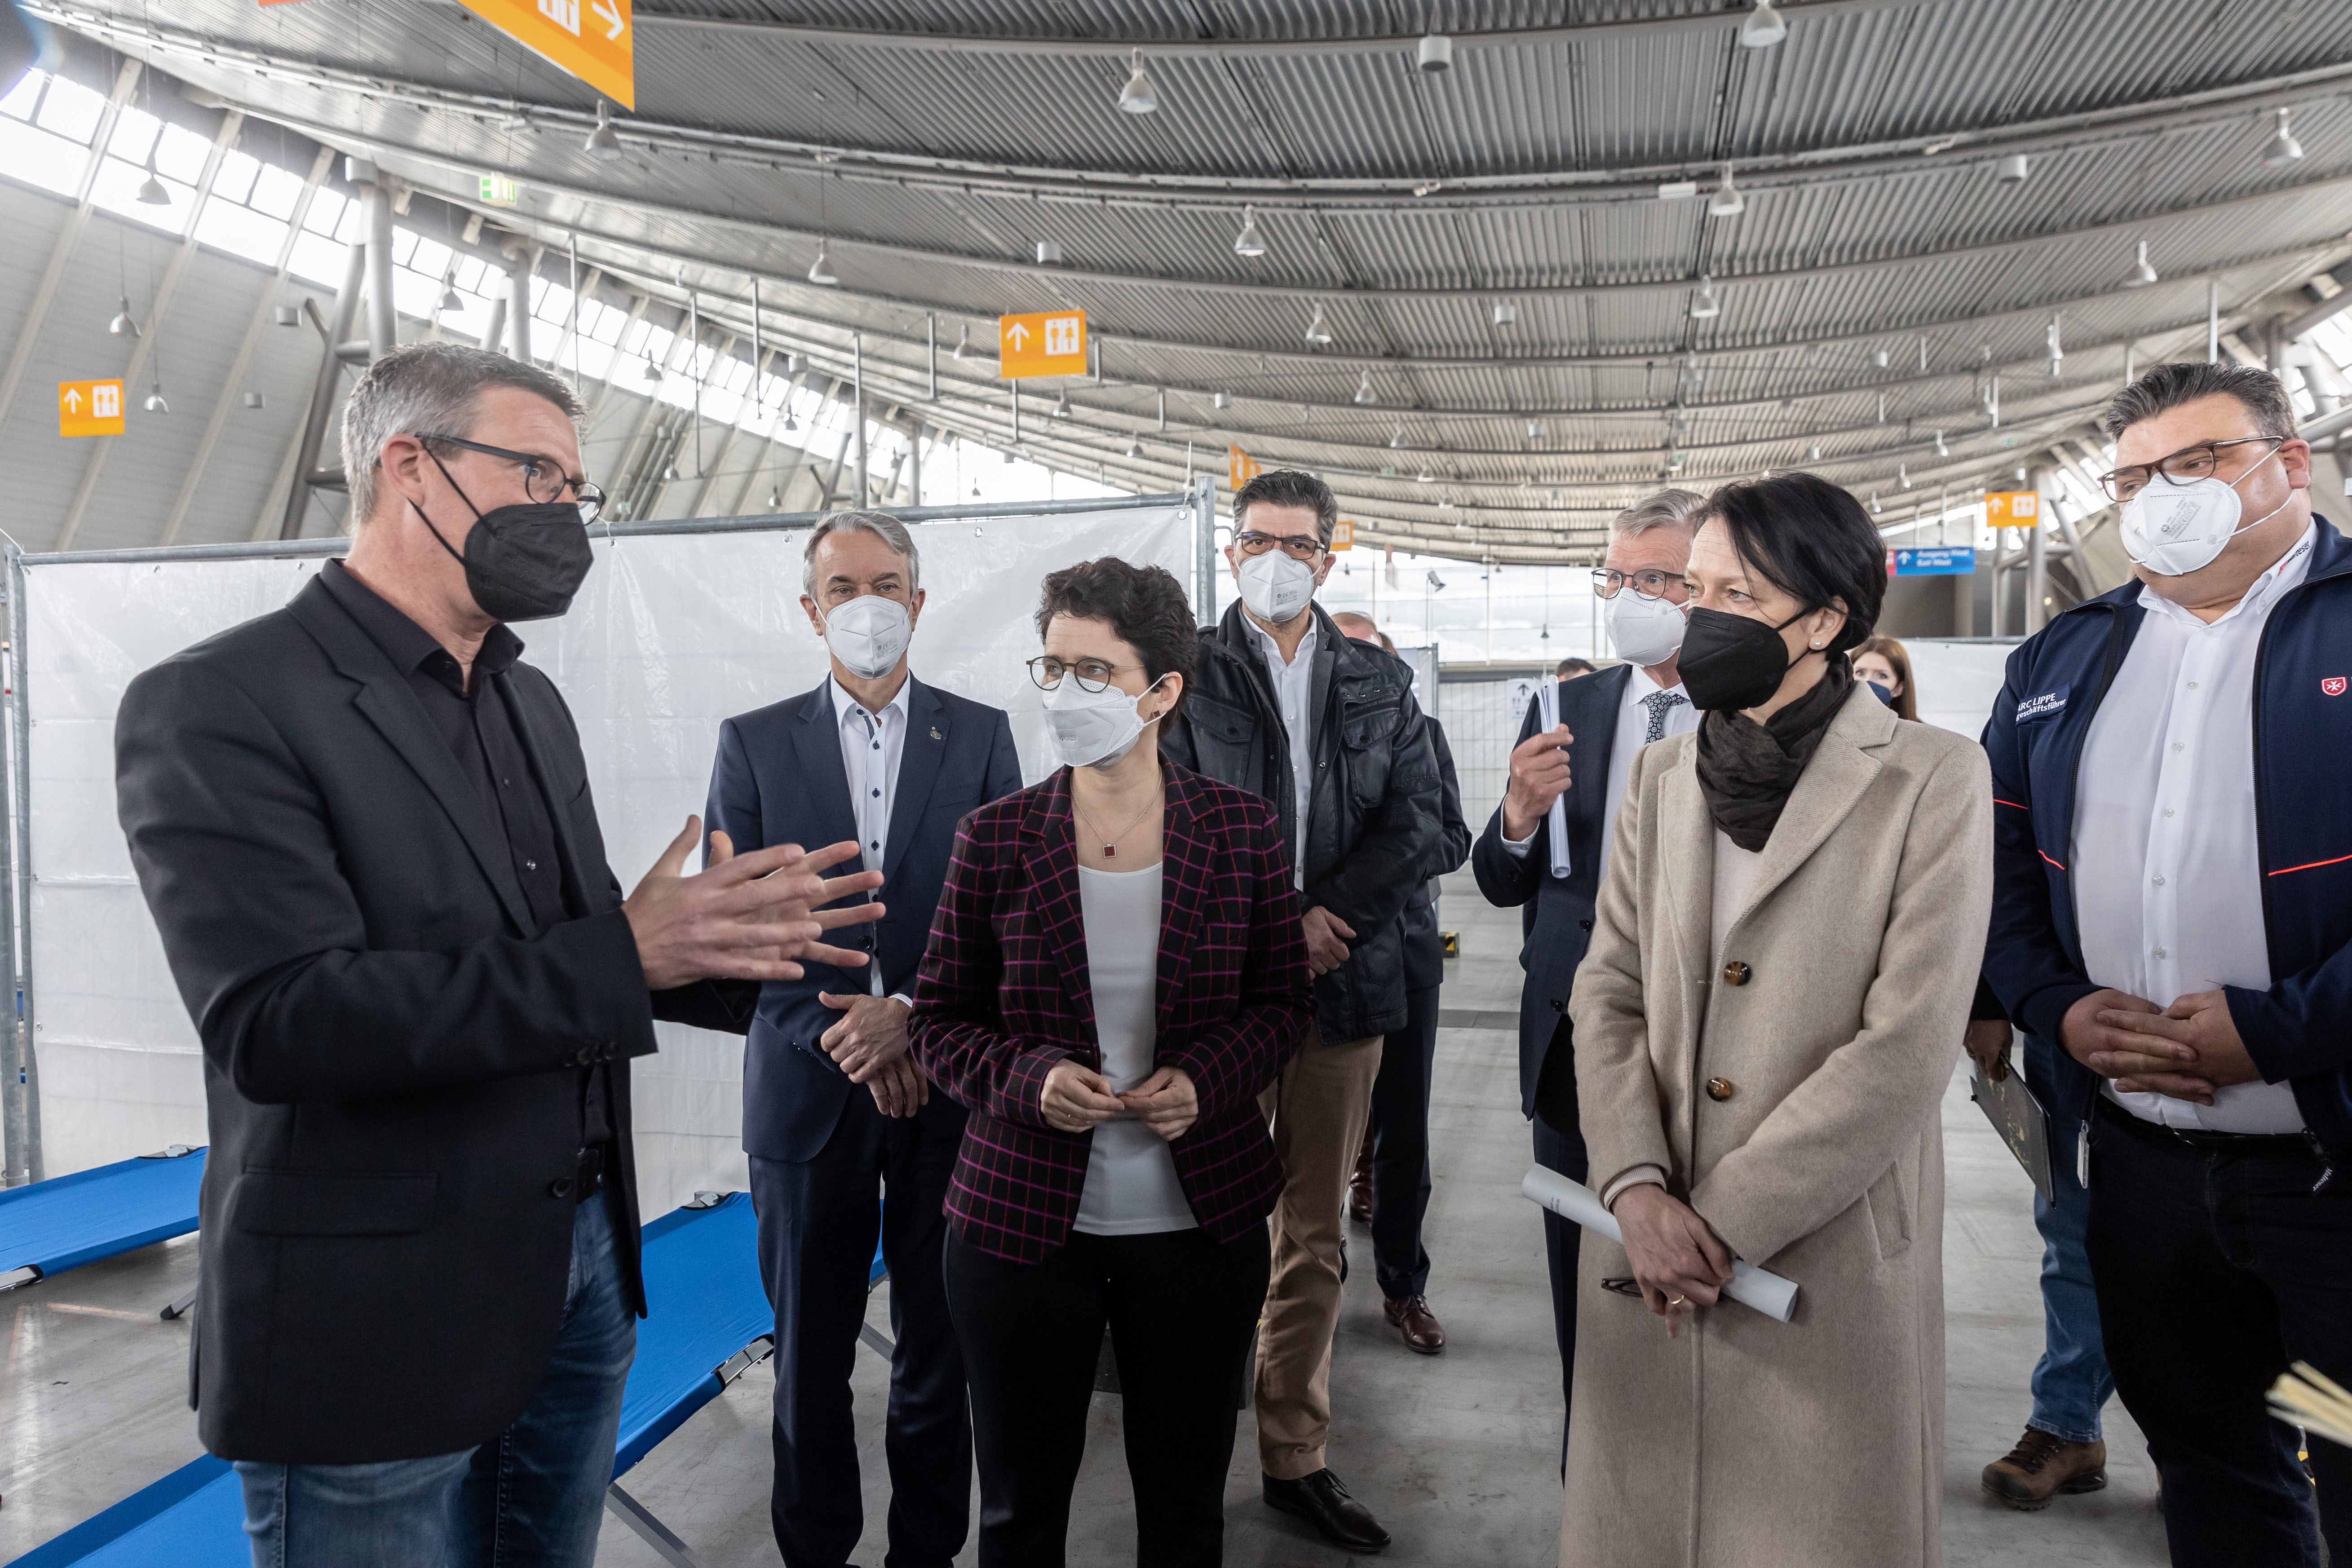 Thomas Deines, Leiter des Referats für Flüchtlingsaufnahme und Integrationsförderung im Regierungspräsidium Stuttgart, führte durch das Ankunftszentrum